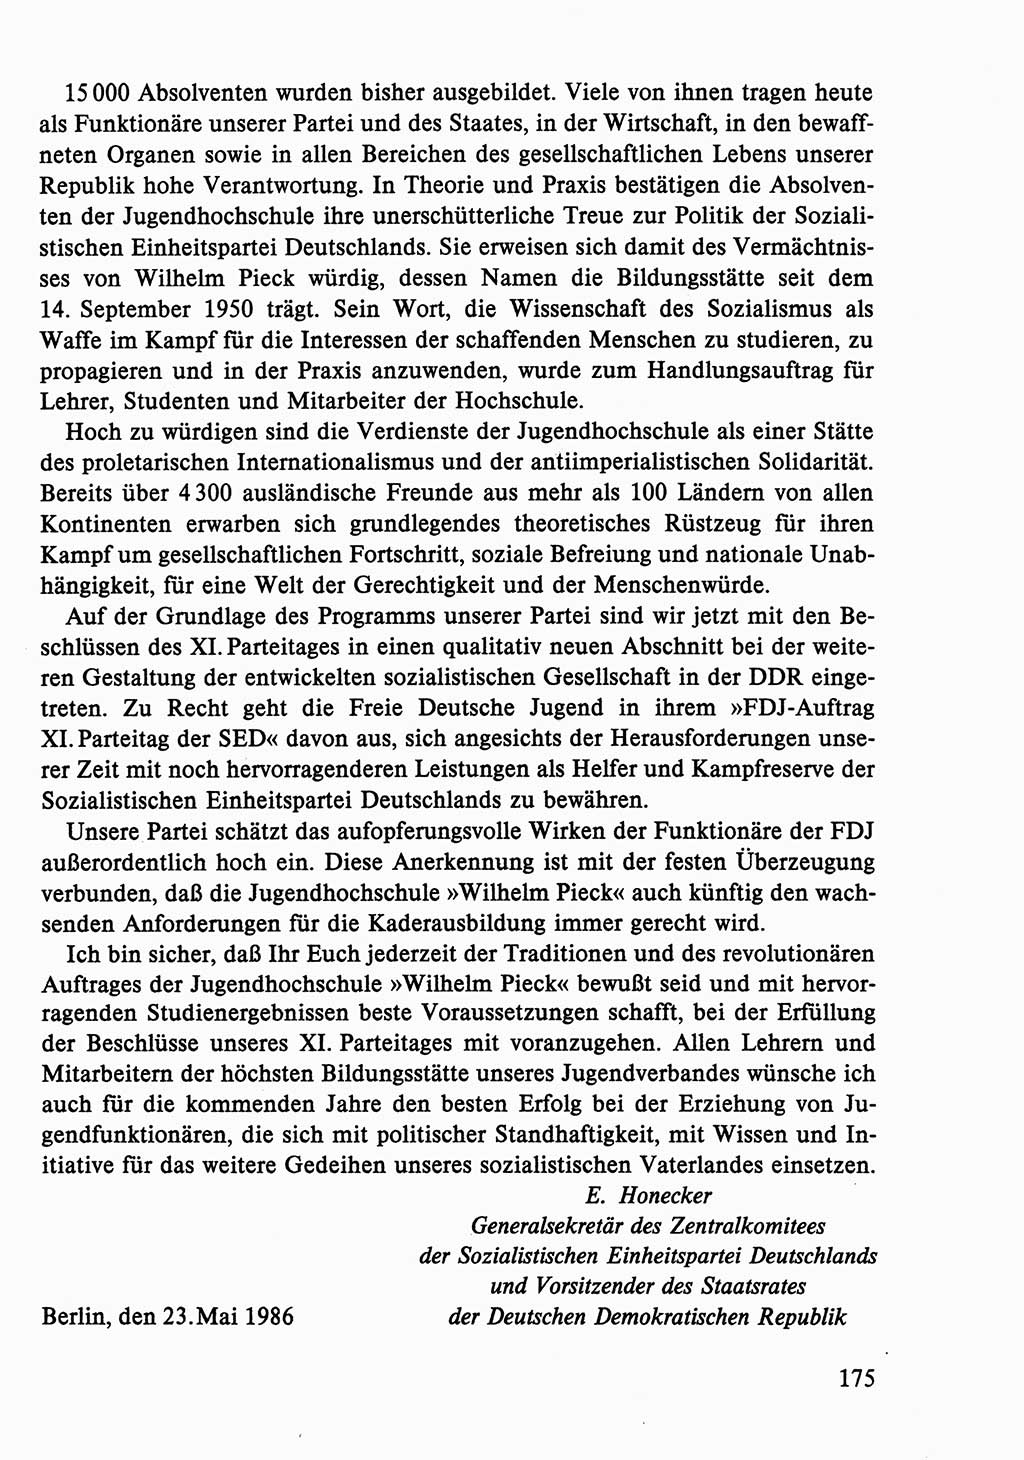 Dokumente der Sozialistischen Einheitspartei Deutschlands (SED) [Deutsche Demokratische Republik (DDR)] 1986-1987, Seite 175 (Dok. SED DDR 1986-1987, S. 175)